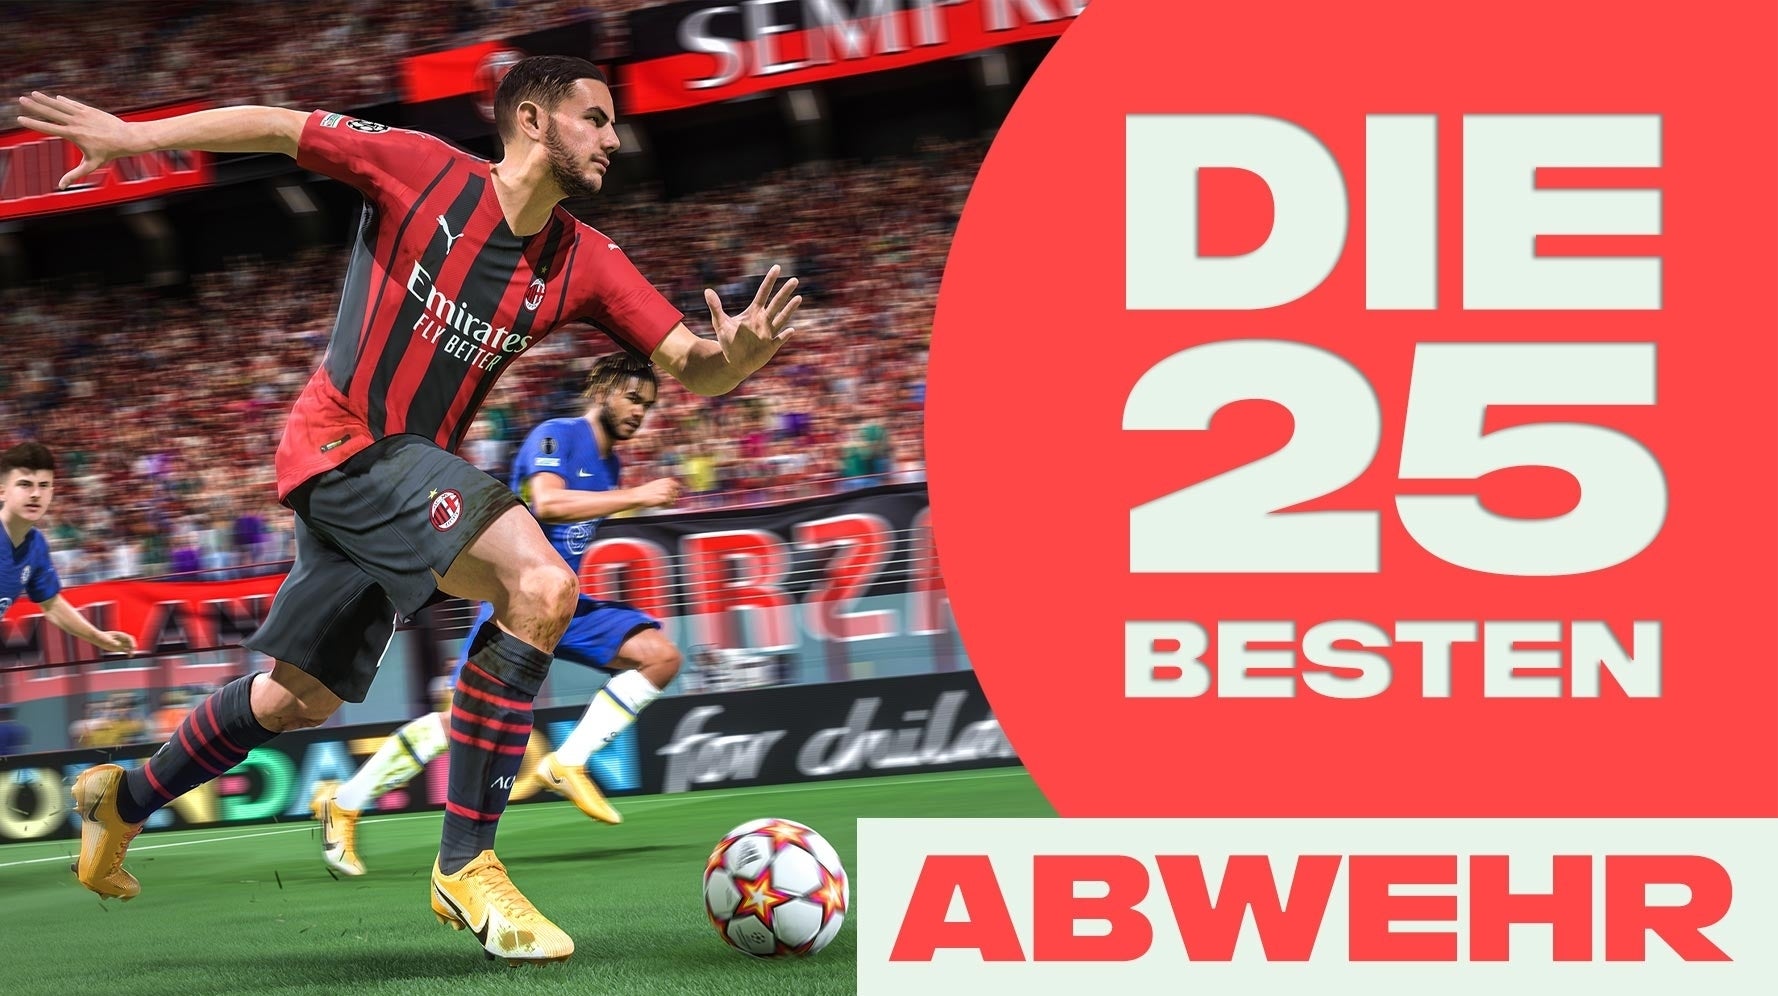 Bilder zu FIFA 22: Die besten Spieler - 25 Abwehrspieler für Verteidiger und Torwart (IV, LV, RW, TW)